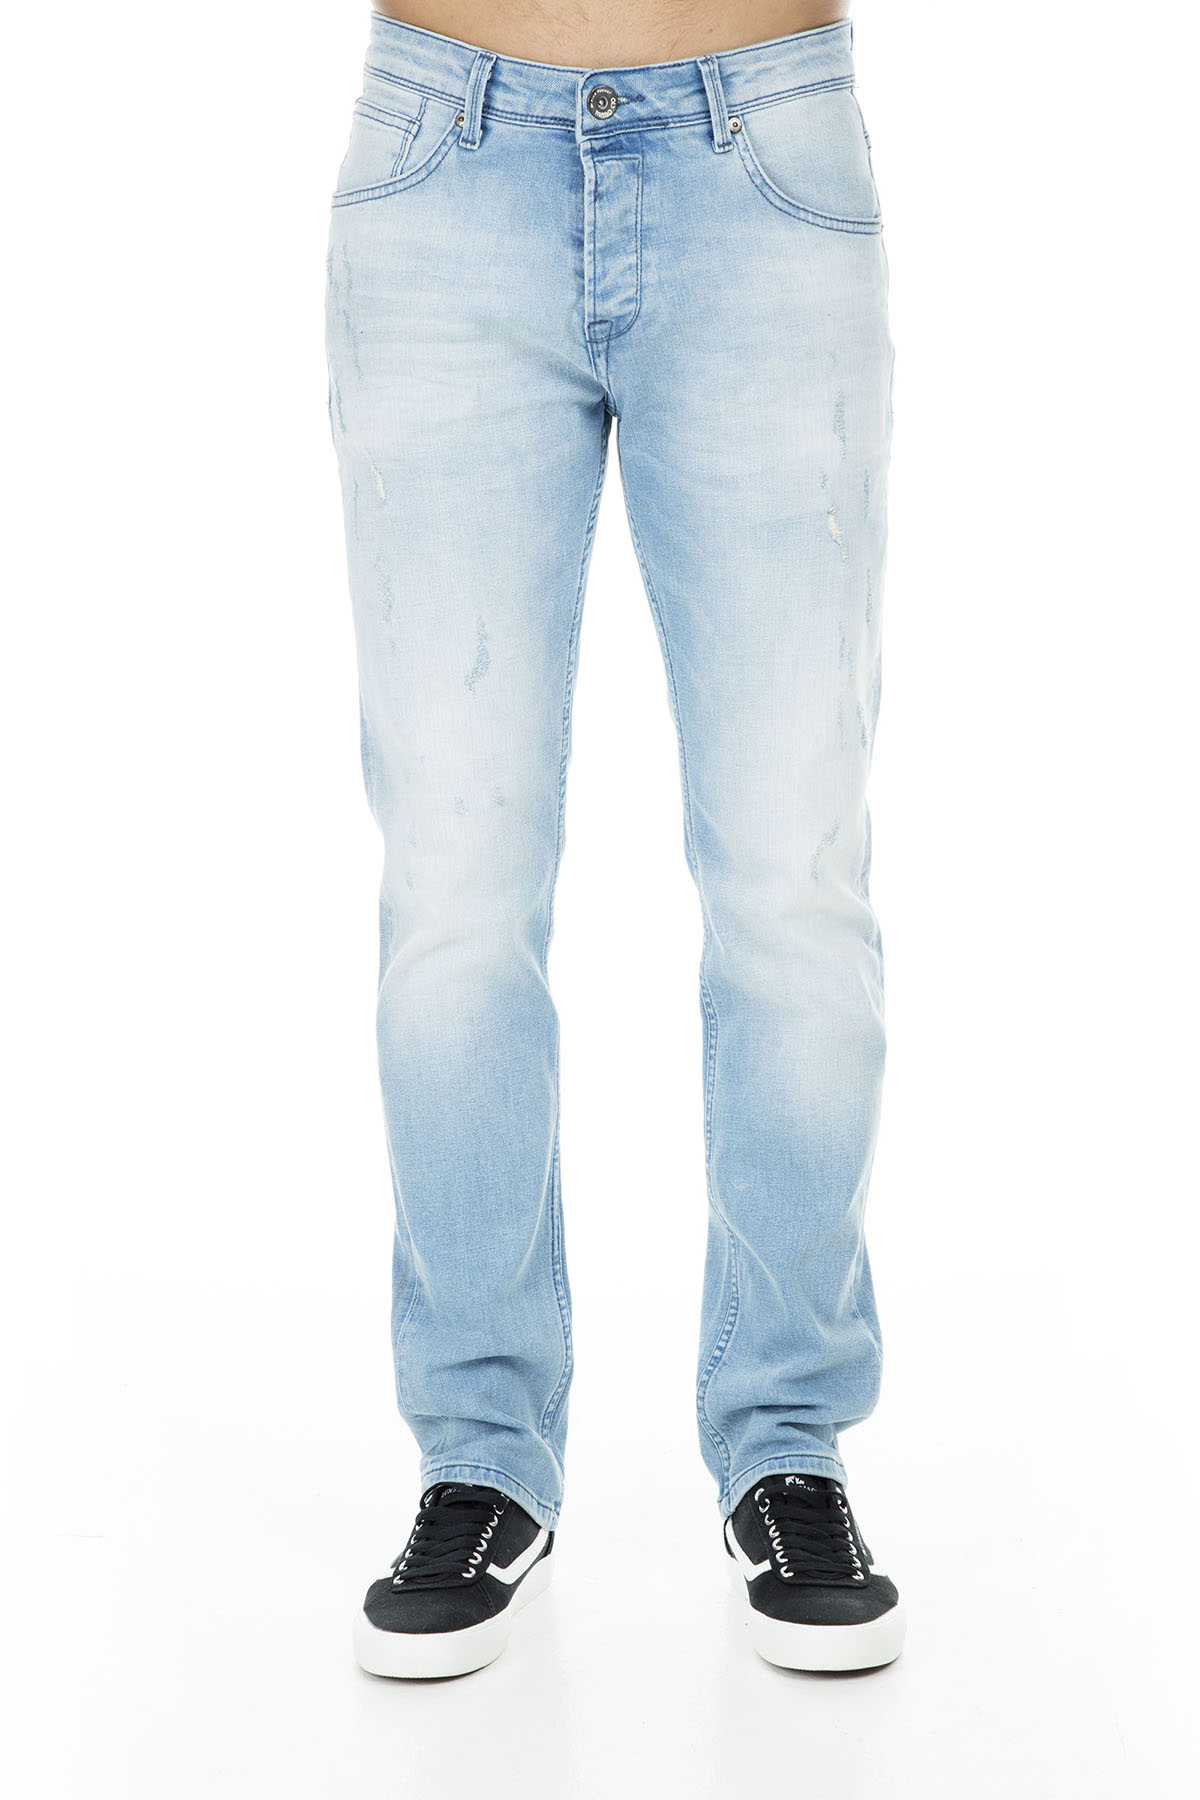 Five Pocket 5 Jeans MEN 'S Jeans PANTS 7130 F161ARTOS